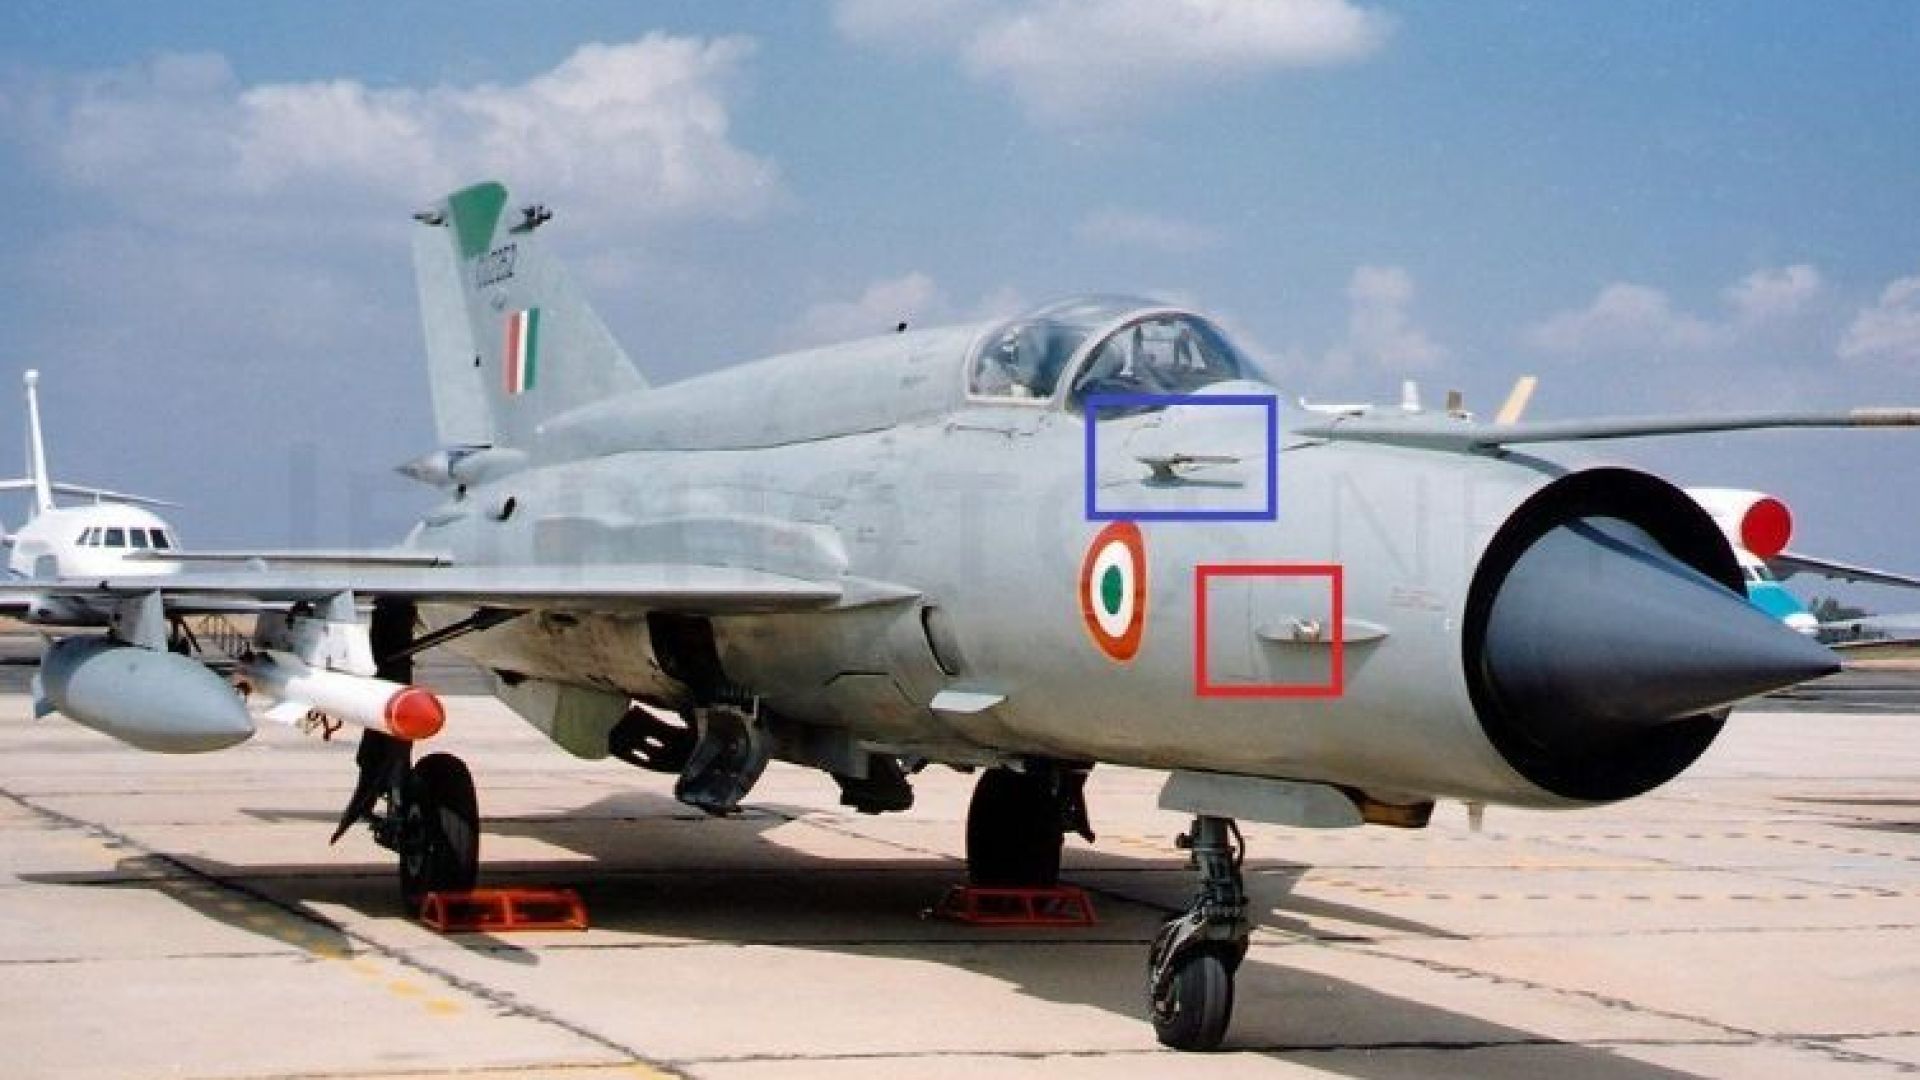 Въздушната битка Индия-Пакистан слиза на земята с пленени пилоти (видео)